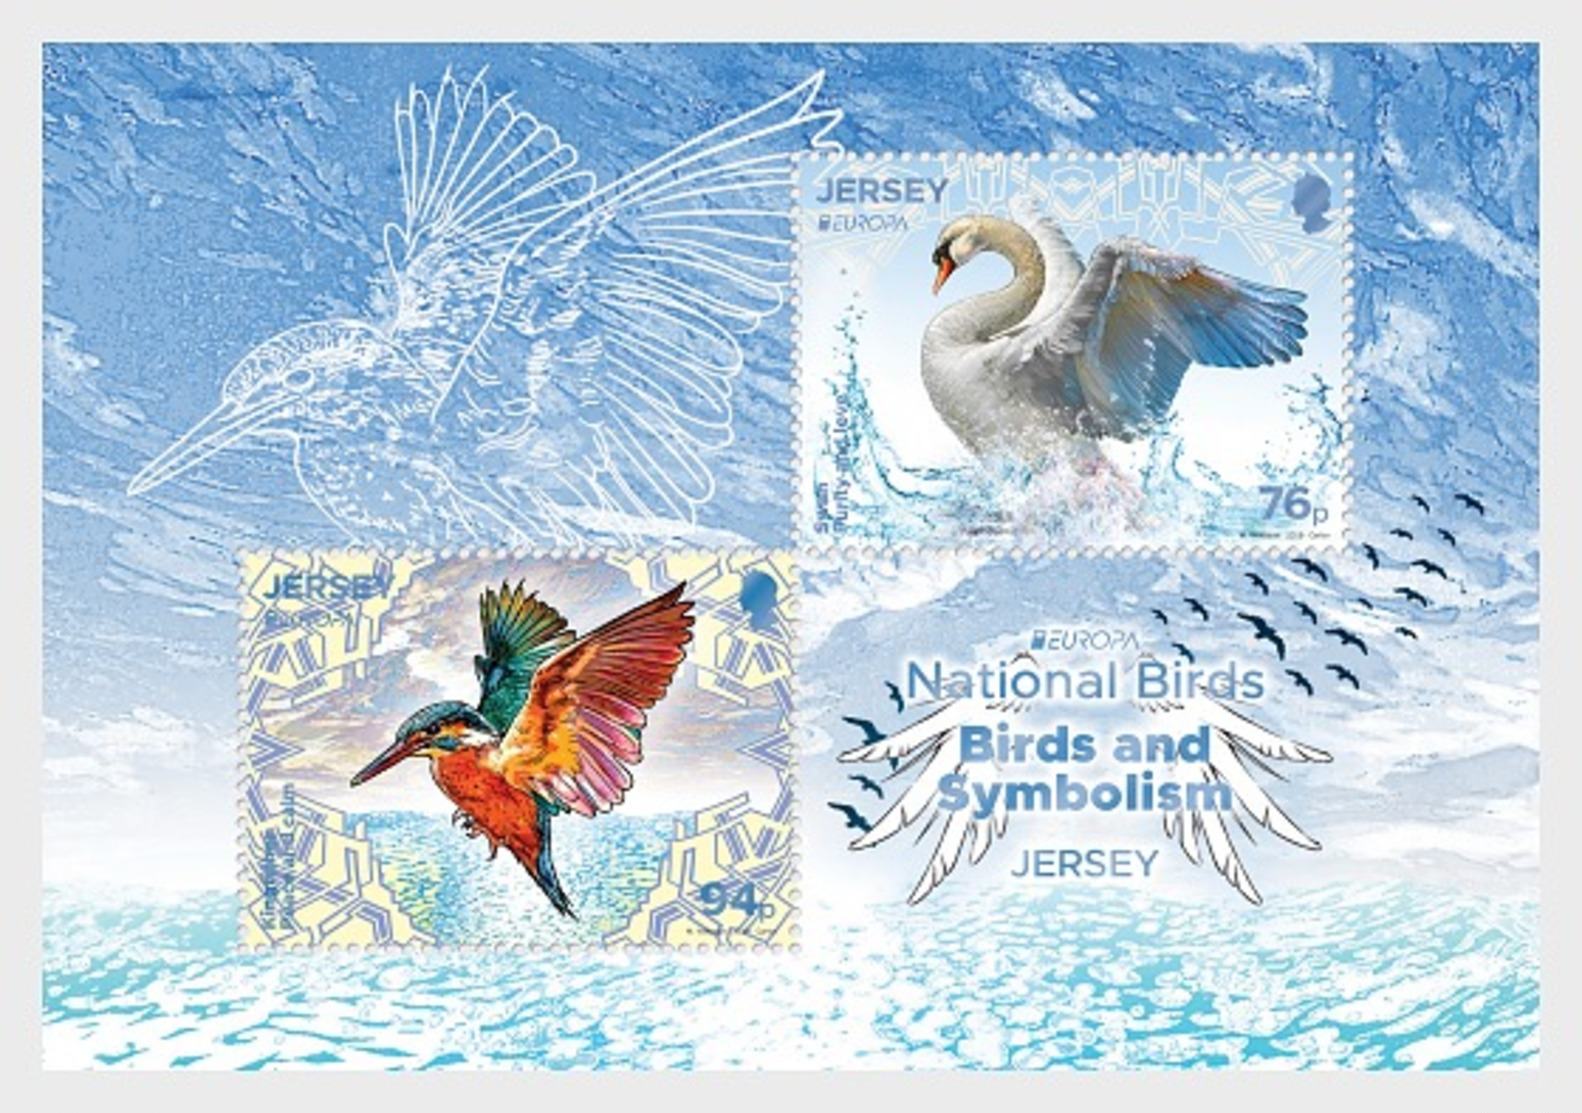 H01 Jersey 2019 Europa  National Birds: Birds & Symbolism  Miniature Sheet - Jersey